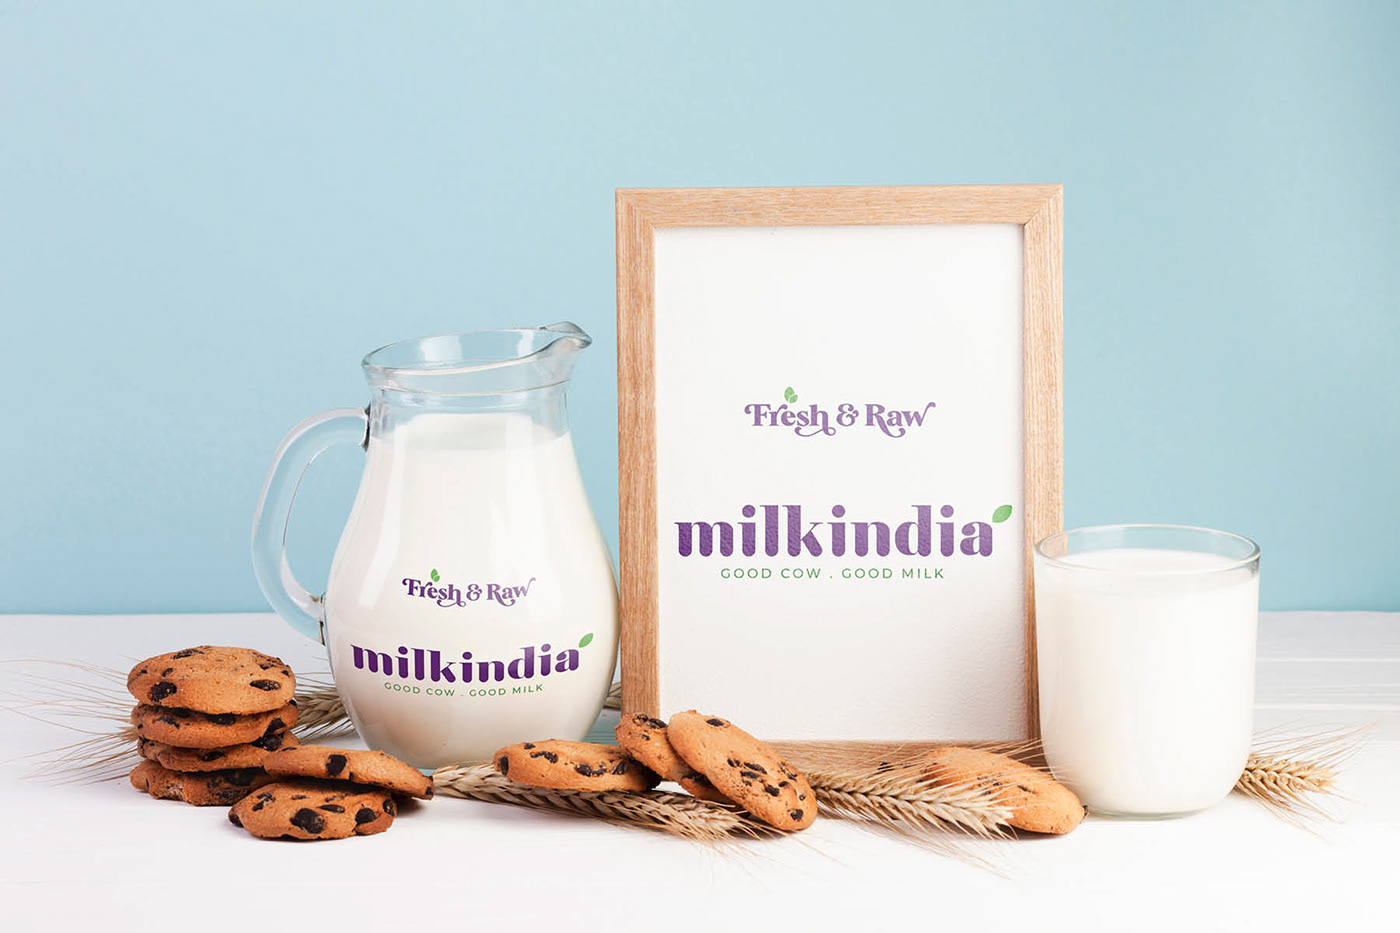 Dairy Branding dairy packaging identity desing milk branding Milk India Milk logo design milk packaging packaging design yoghurt branding Yoghurt Packaging